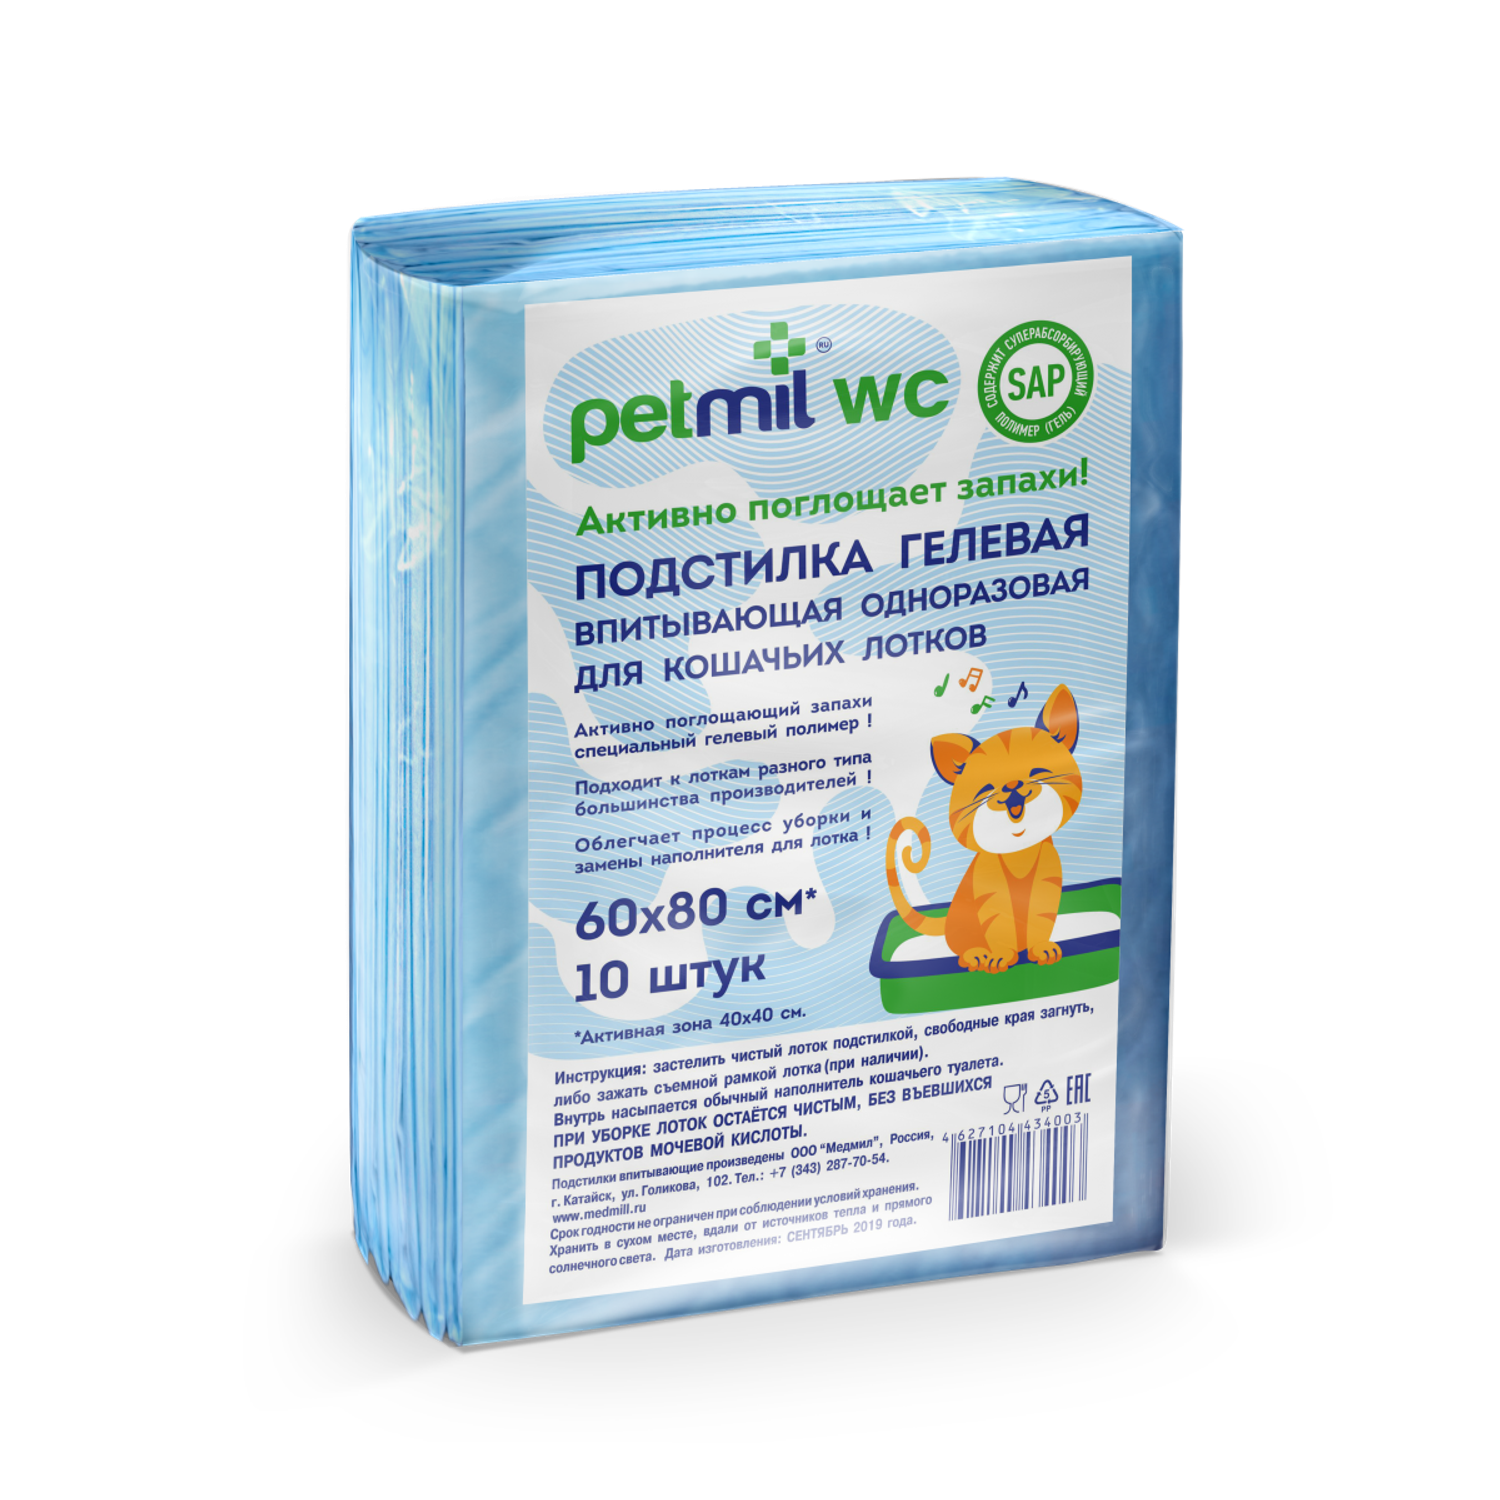 Пеленки для животных PETMIL гелевые для кошачьих лотков 60*80 10 шт - фото 1